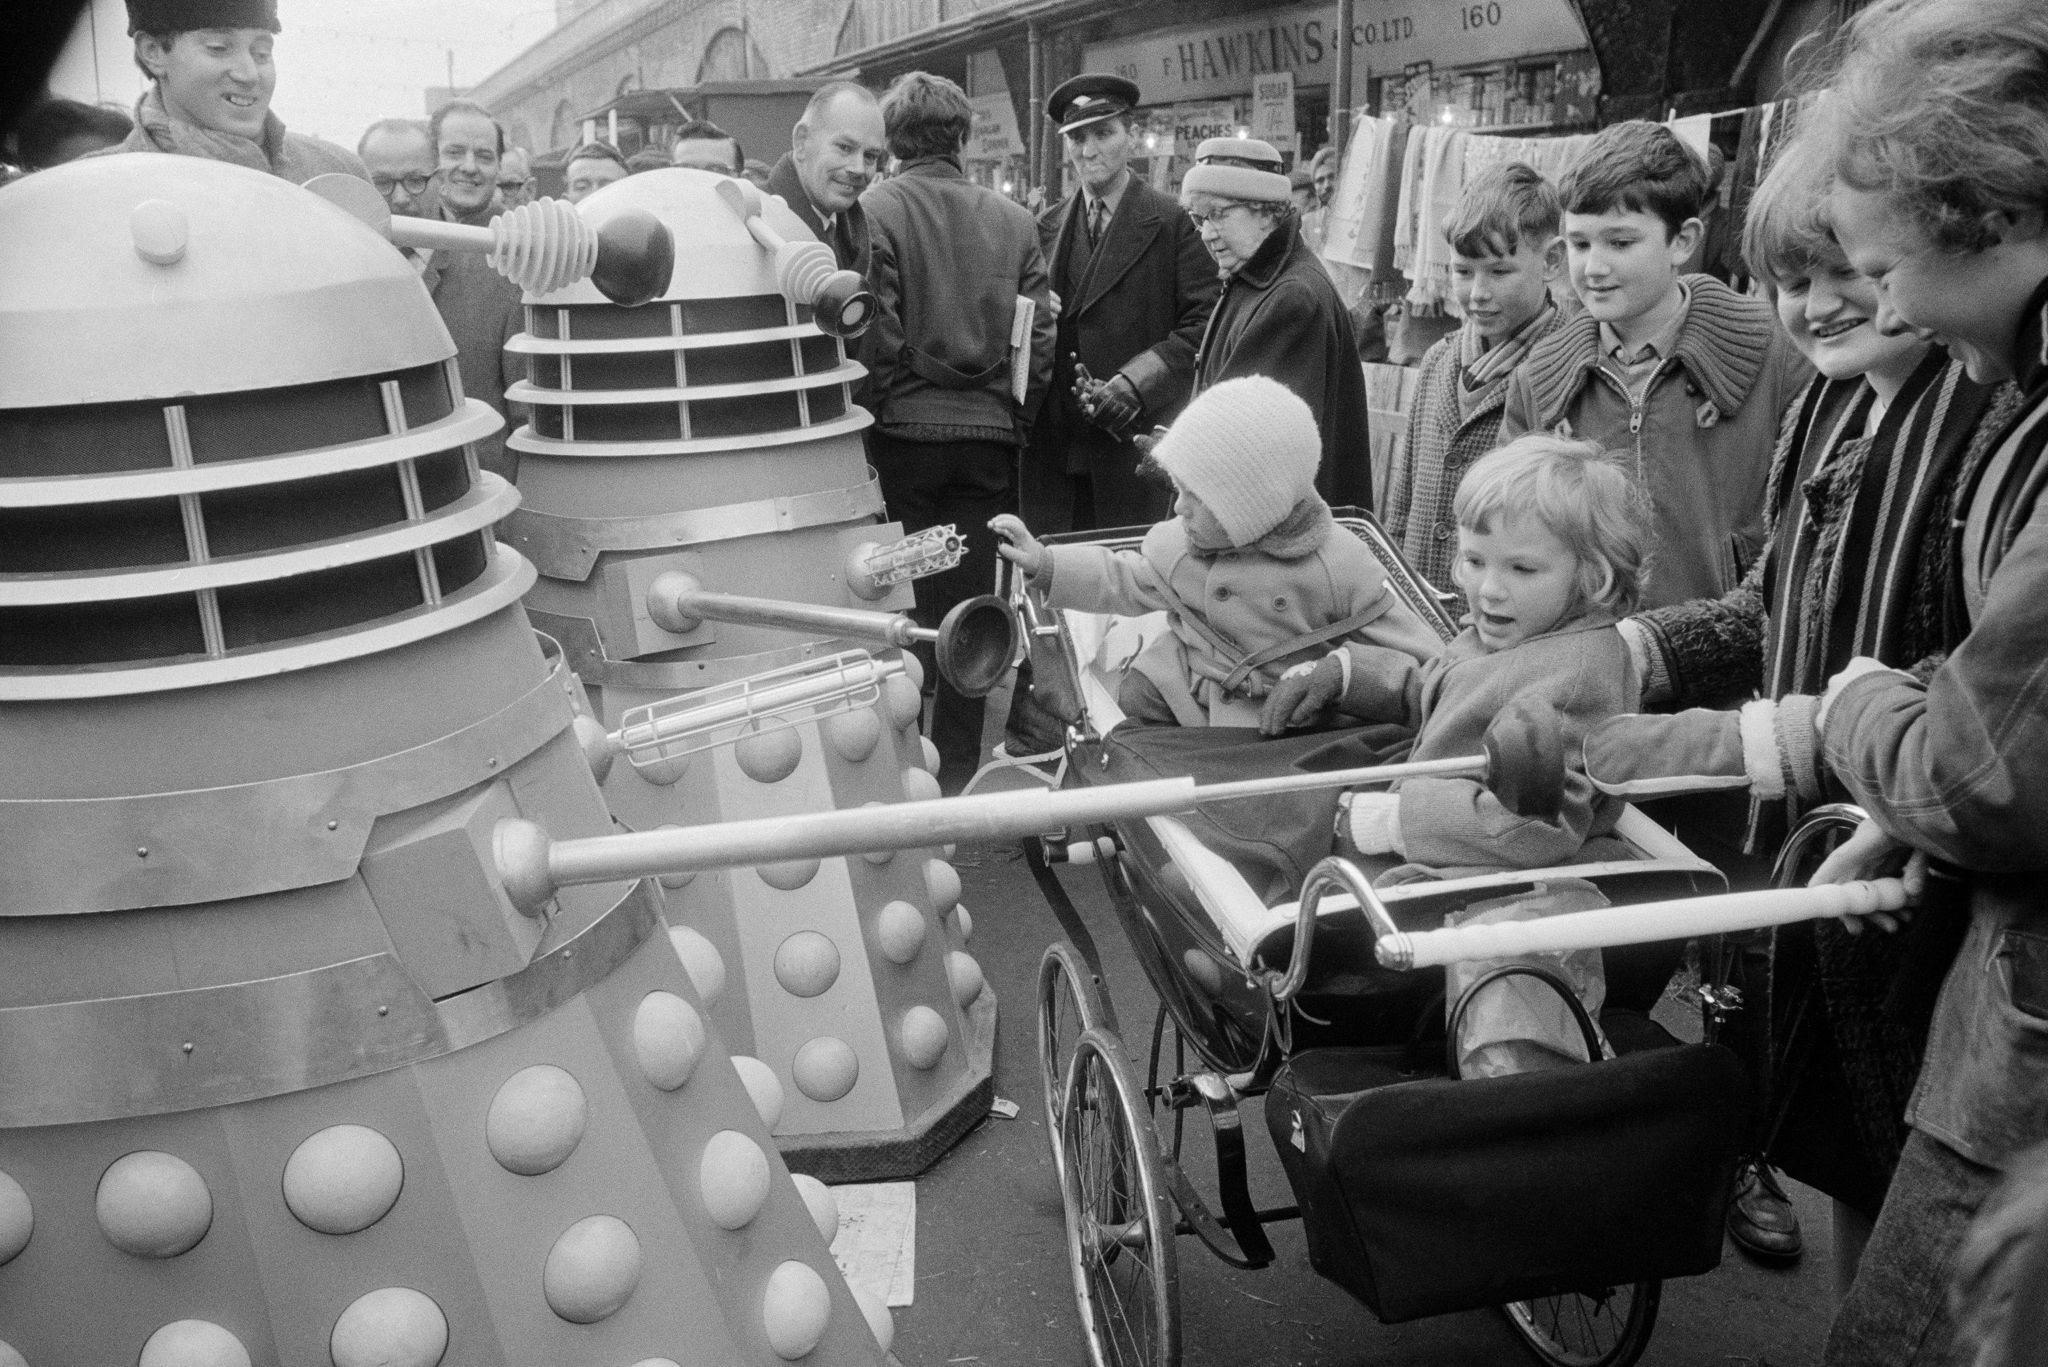 Two Daleks pay a visit to Shepherds Bush Market (1963)